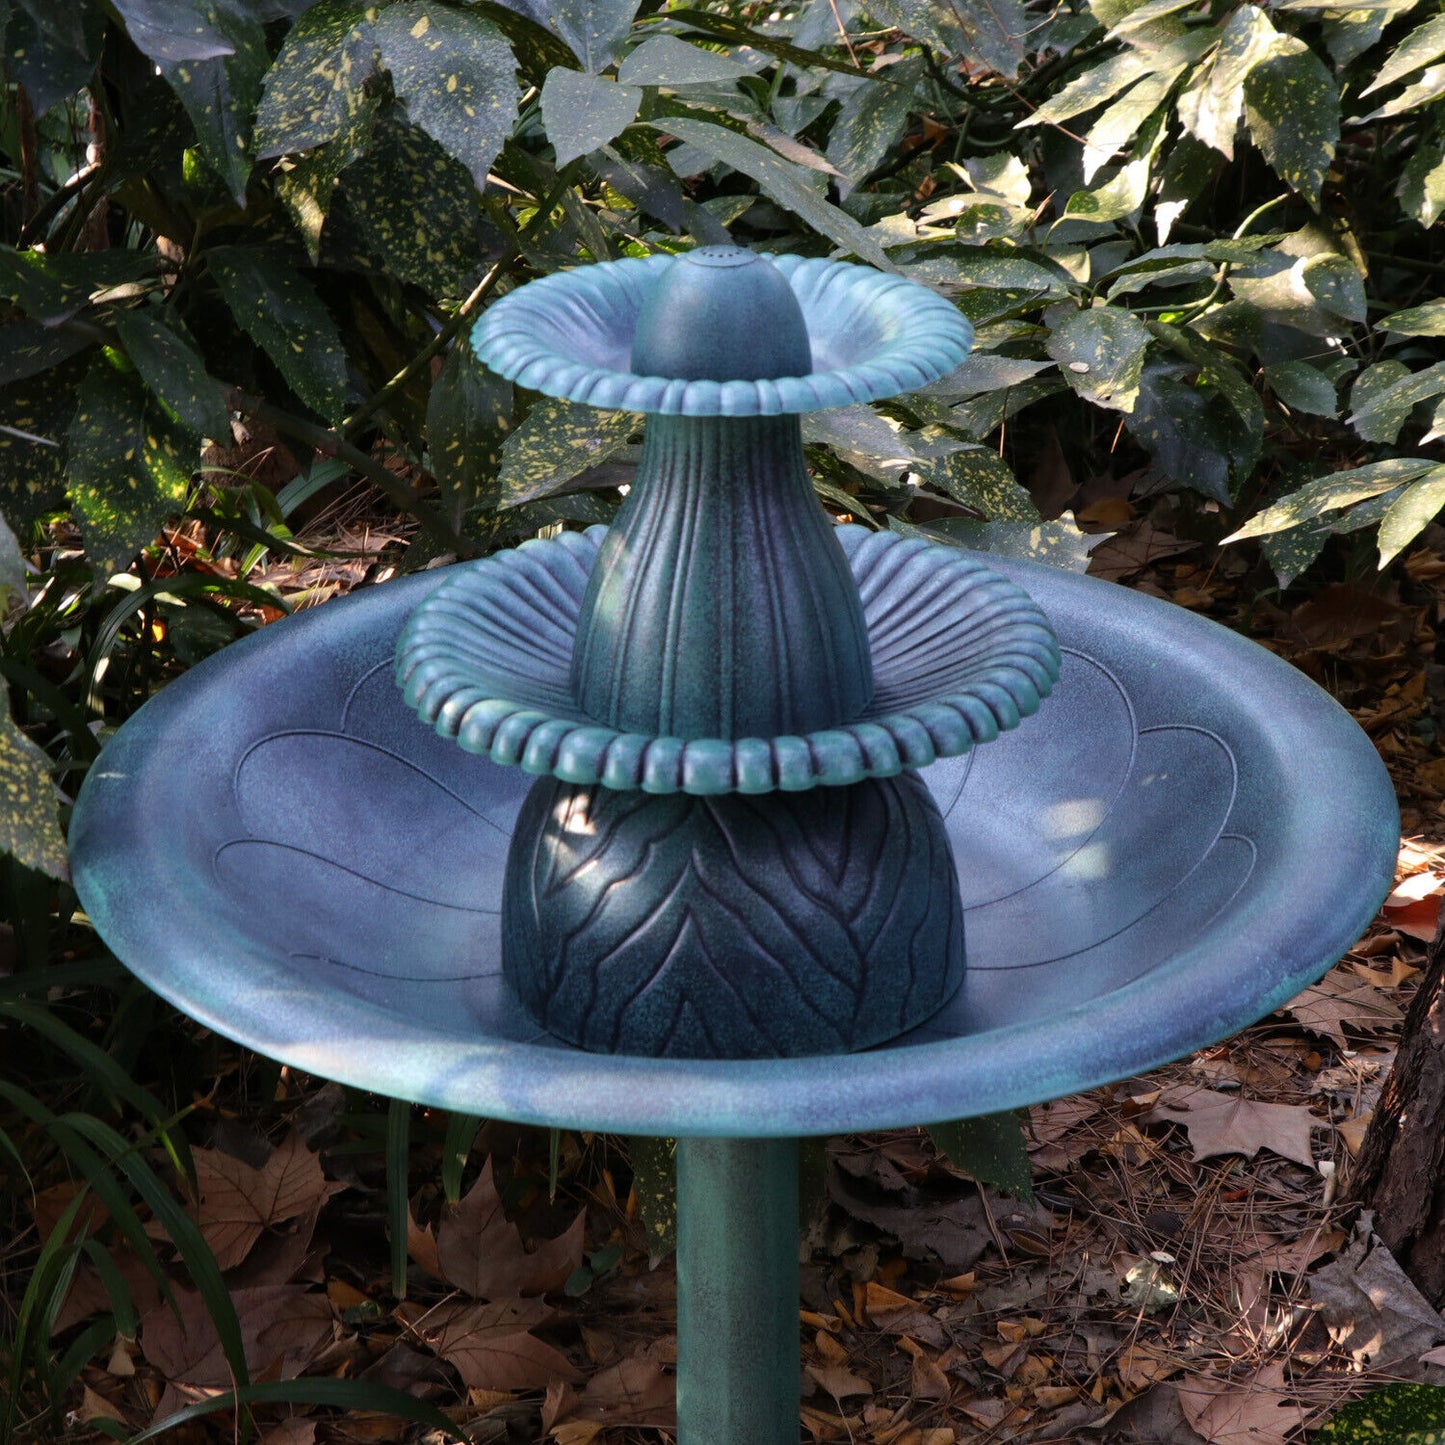 3 Tier Bird Bath Fountain Garden Pedestal Outdoor Water Fountain W/Pump Decor